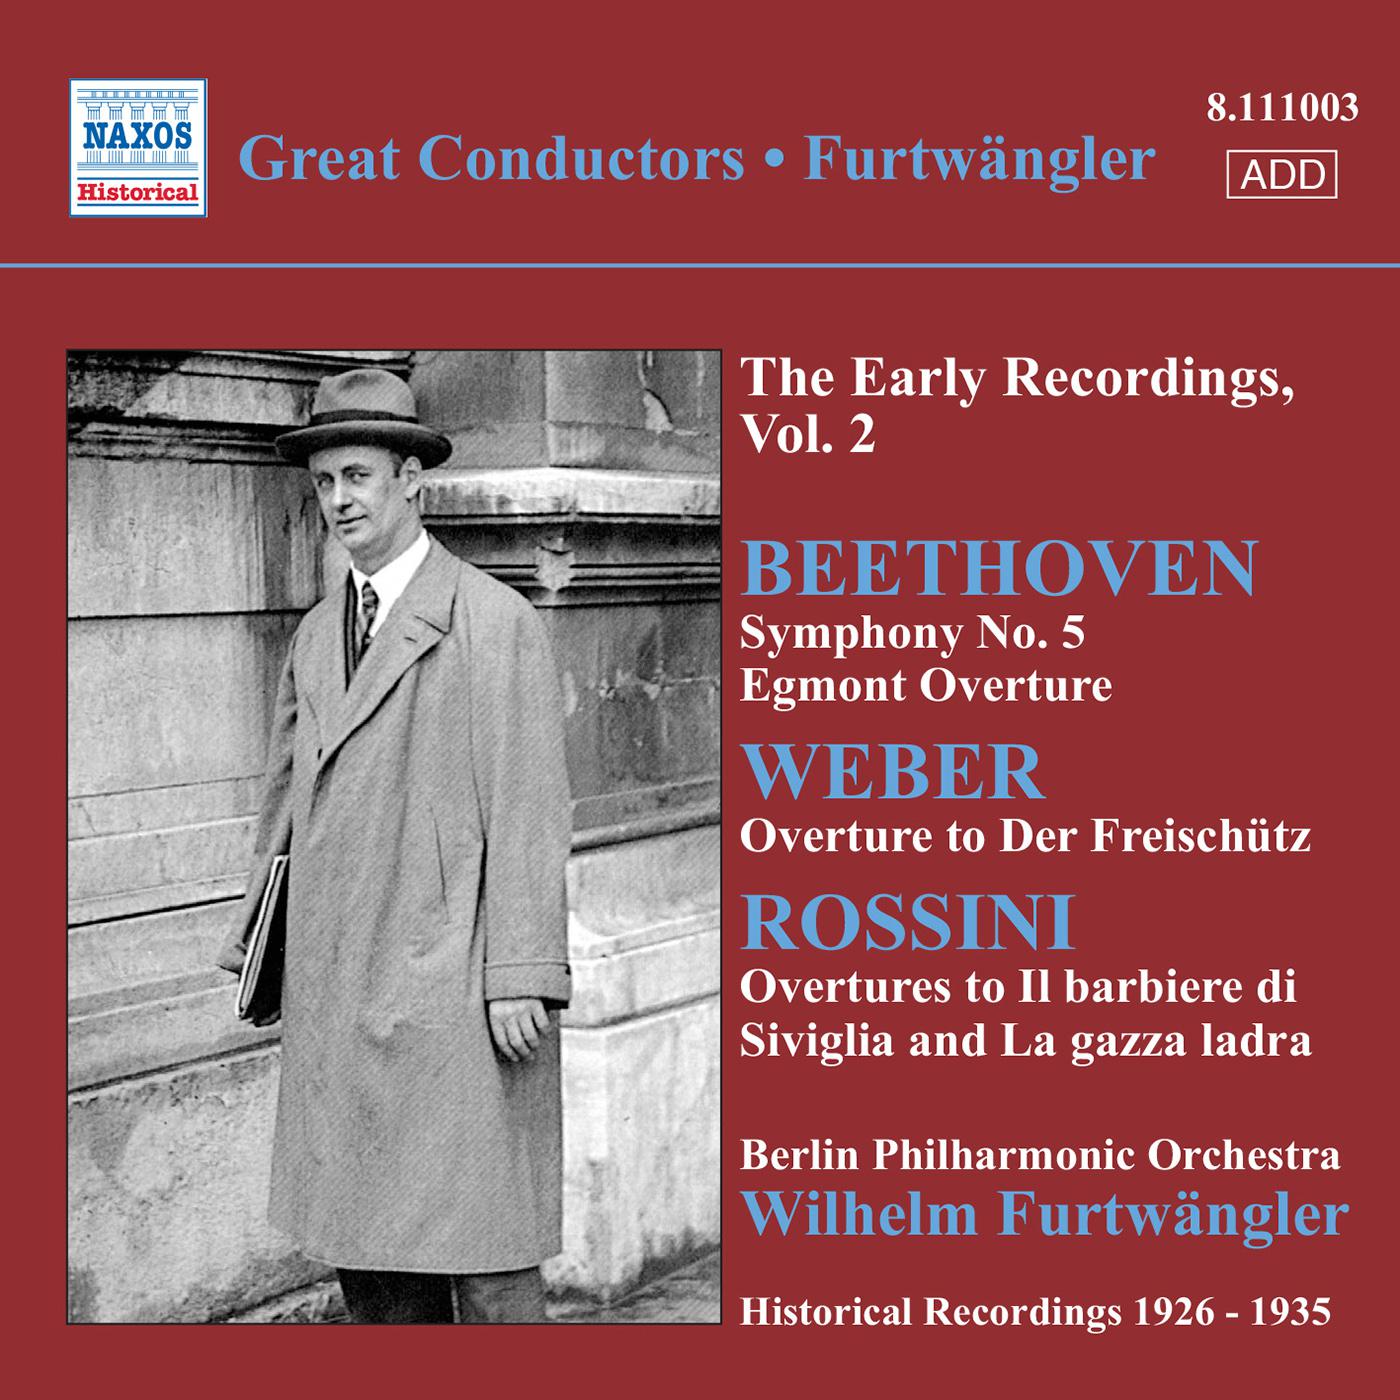 BEETHOVEN, L. van: Symphony No. 5 / Egmont Overture / WEBER, C.M. von: Der Freischutz Overture (Furtwangler, Early Recordings, Vol. 2) (1926-1935)